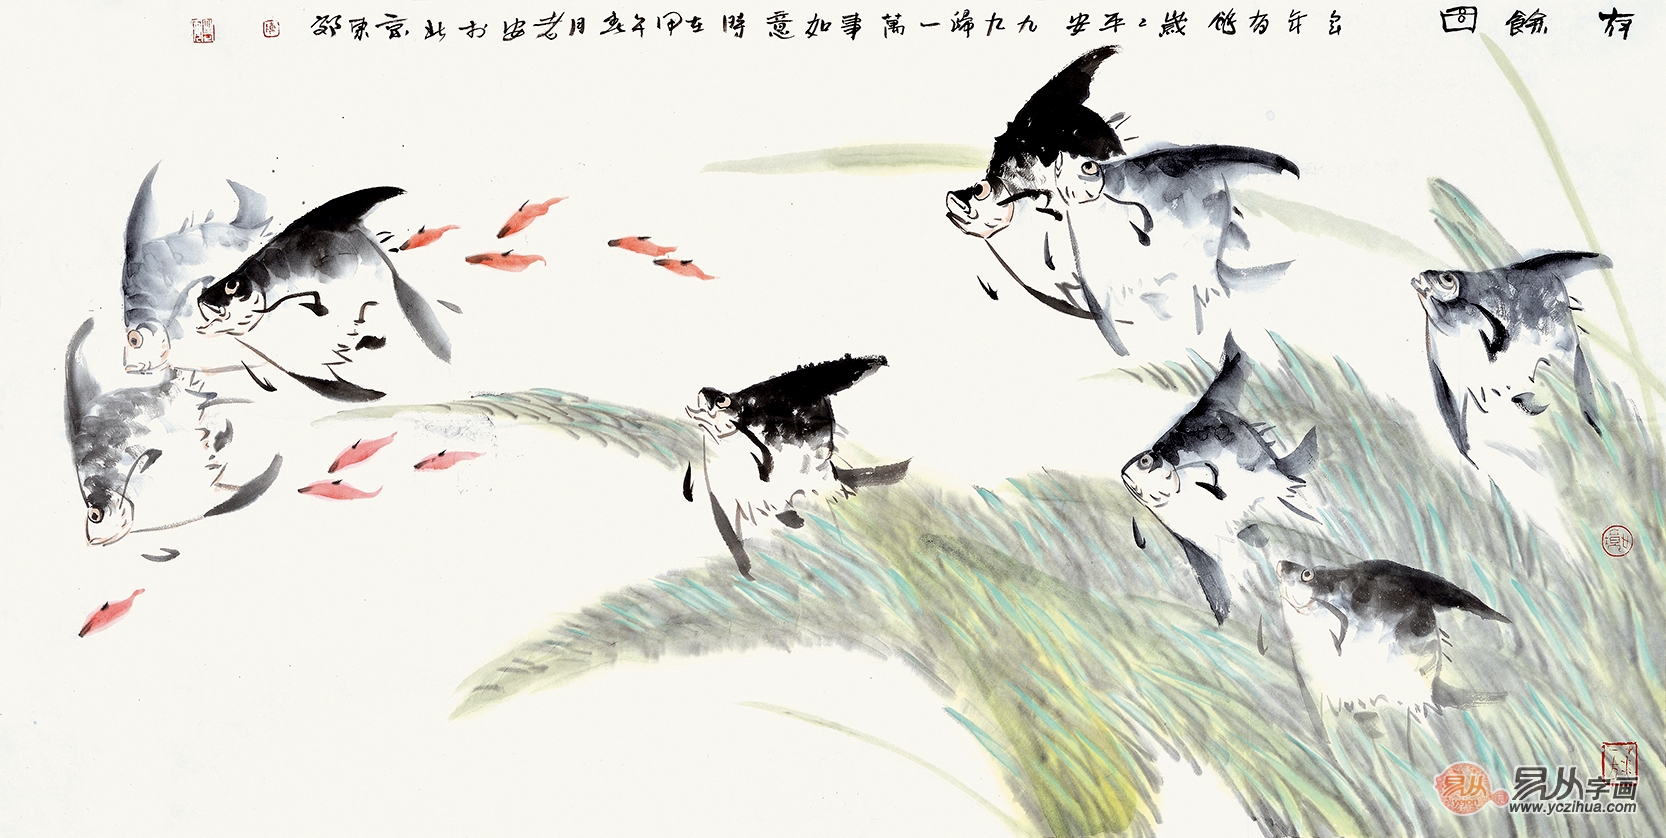 陈儒义四尺横幅花鸟画作品鱼《有余图》